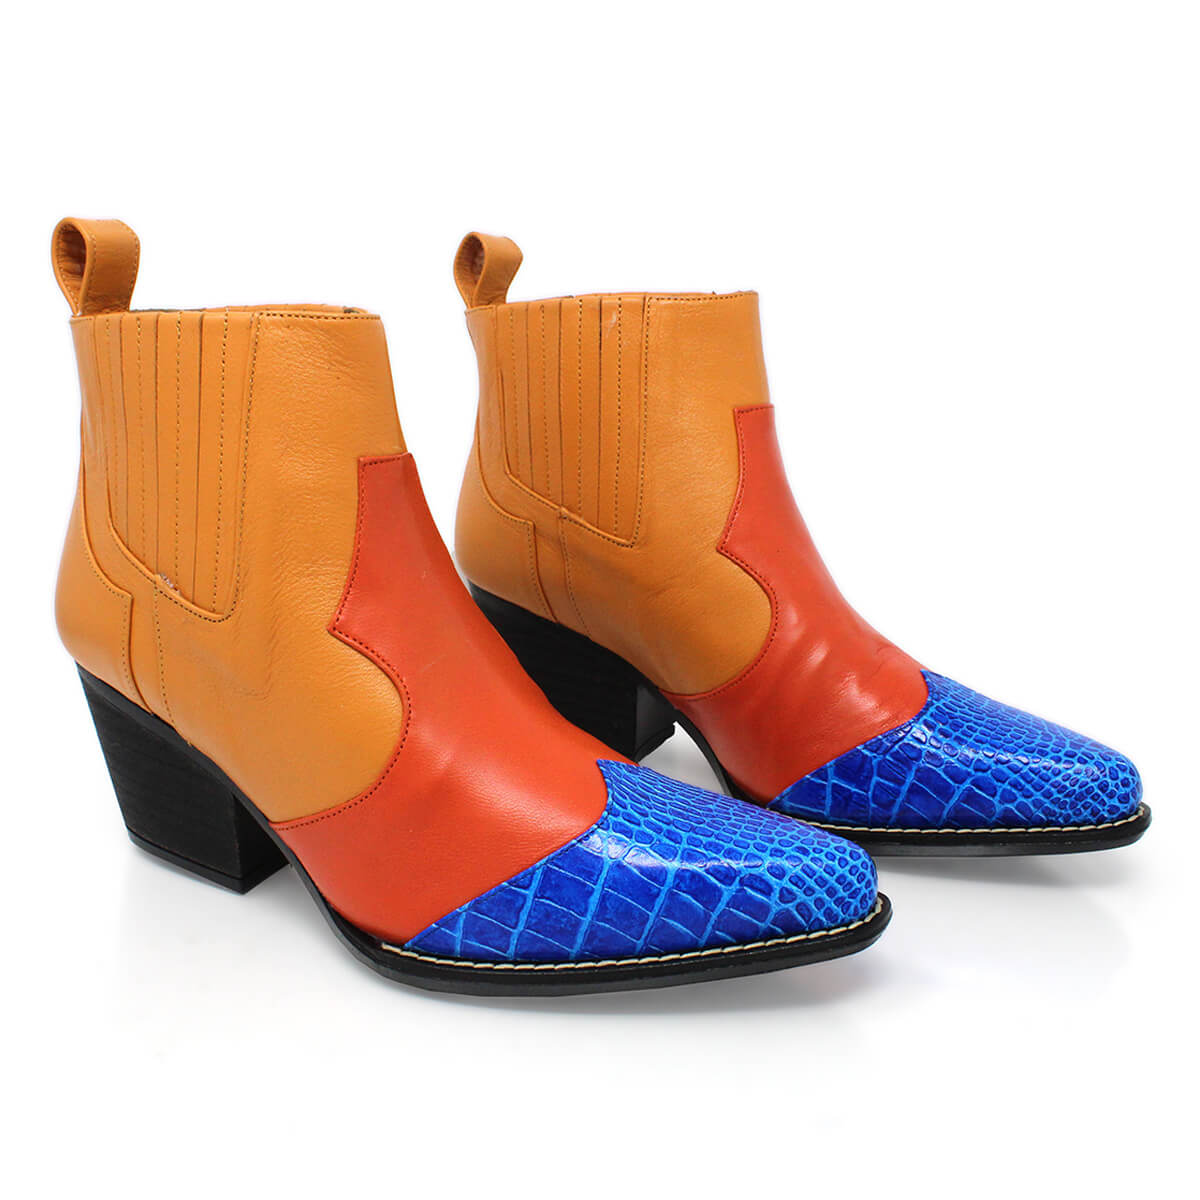 MADDIE 60 Edicion Limitada - Naranja y Azul Romero Zapato Bota Botin Tacon Bajo para Dama en Piel